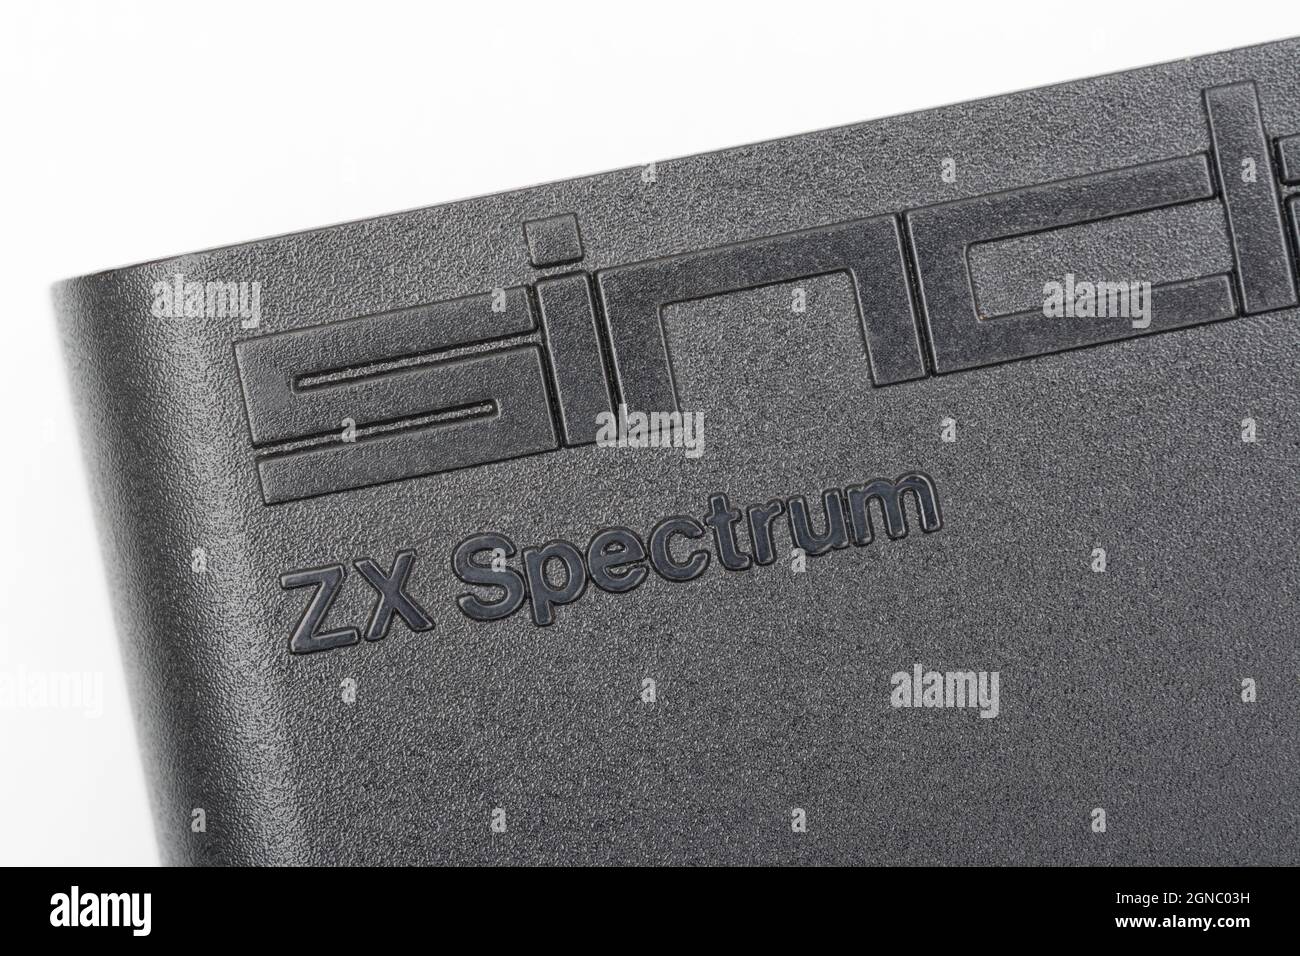 Nahaufnahme des erhöhten Sinclair ZX Spectrum Logos auf schwarzem Gehäuse. Klassischer 8-Bit-Heimcomputer aus den 1980er Jahren, der eine Generation von Programmierern inspirierte. Stockfoto